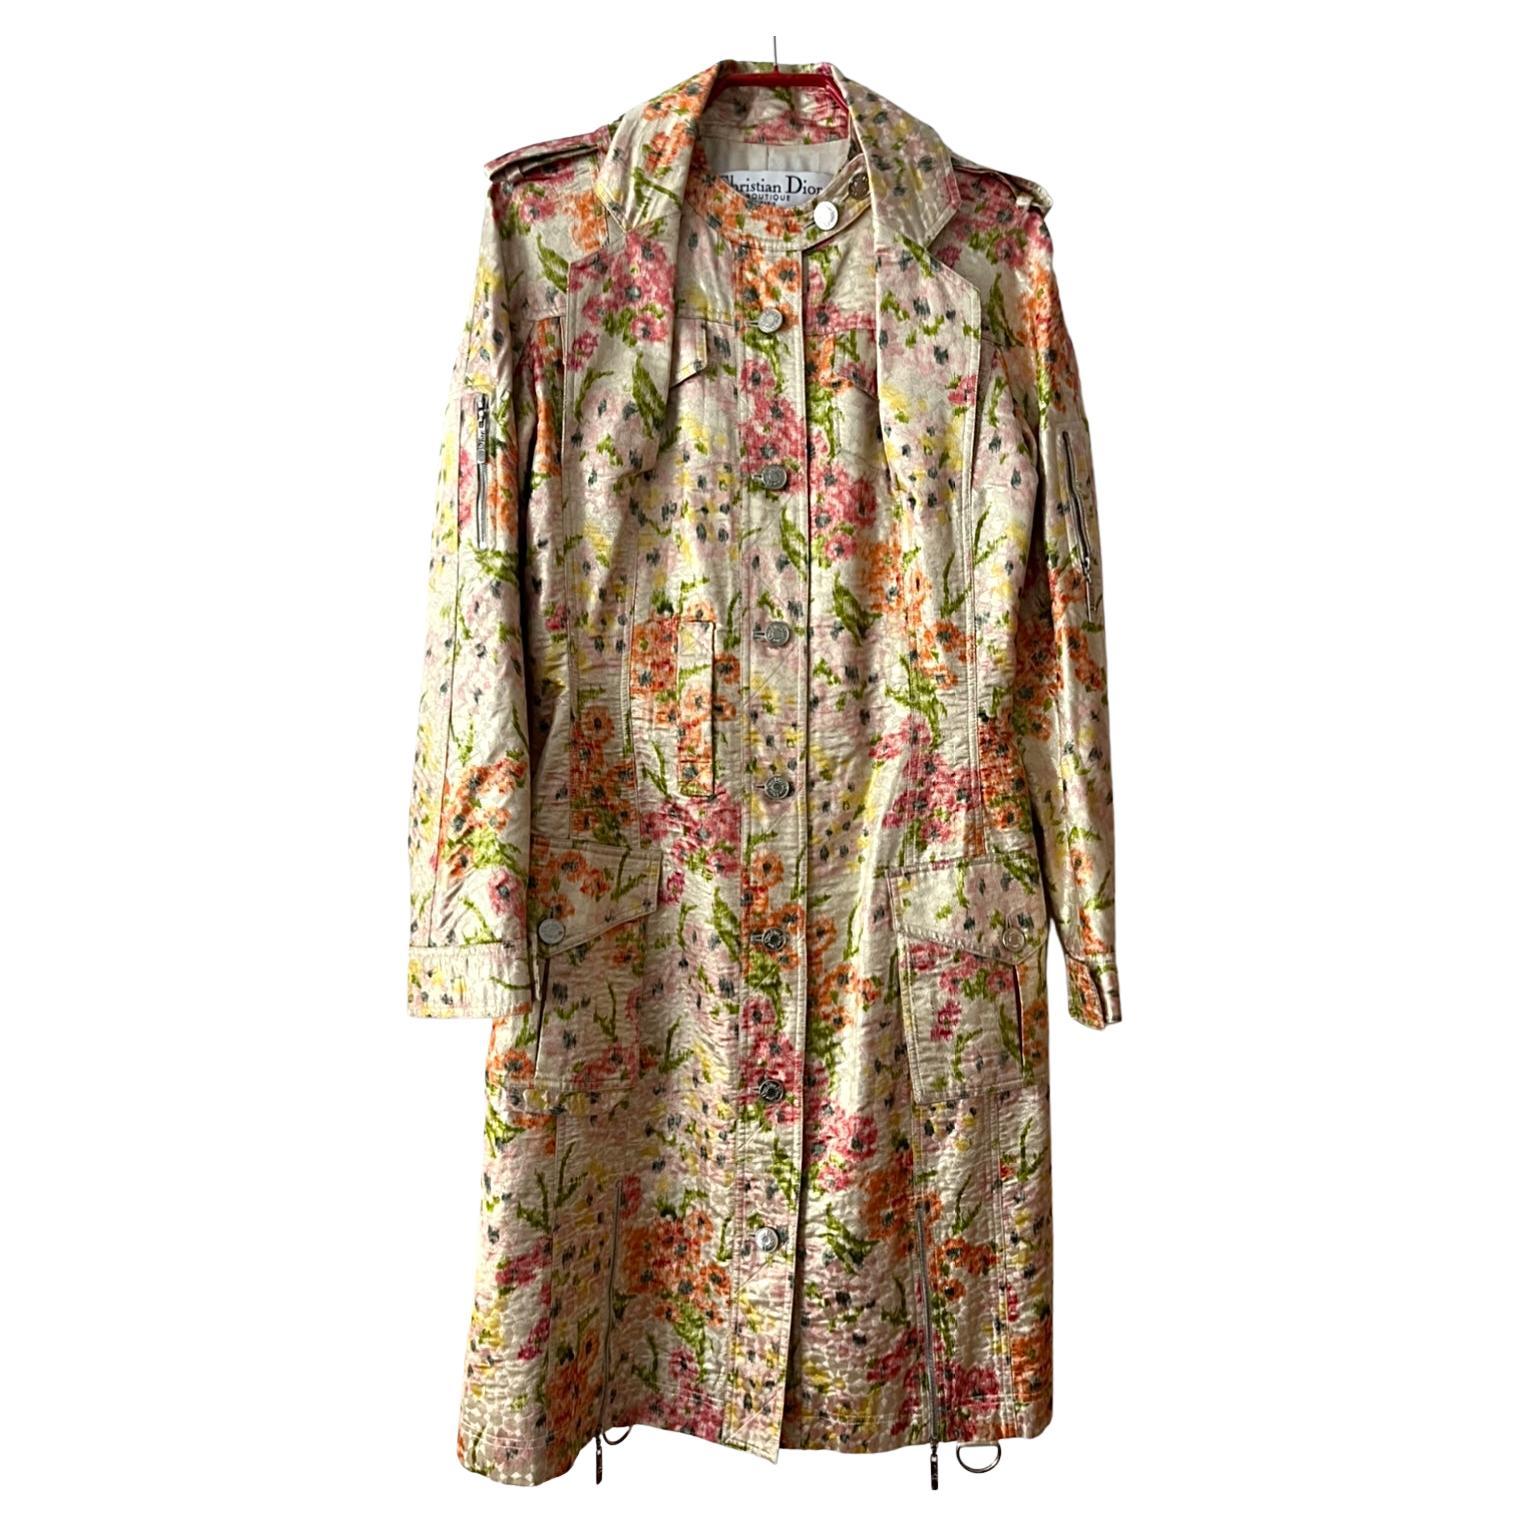 2005 Spring Christian Dior Silk Trench Coat von John Galliano in einem sehr guten Vintage-Zustand. Wunderschöner Blumendruck. Diese Retrospektive wurde einfach retro - ein Mischmasch aus alten Referenzen, die als etwas Neues getarnt wurden.
89%